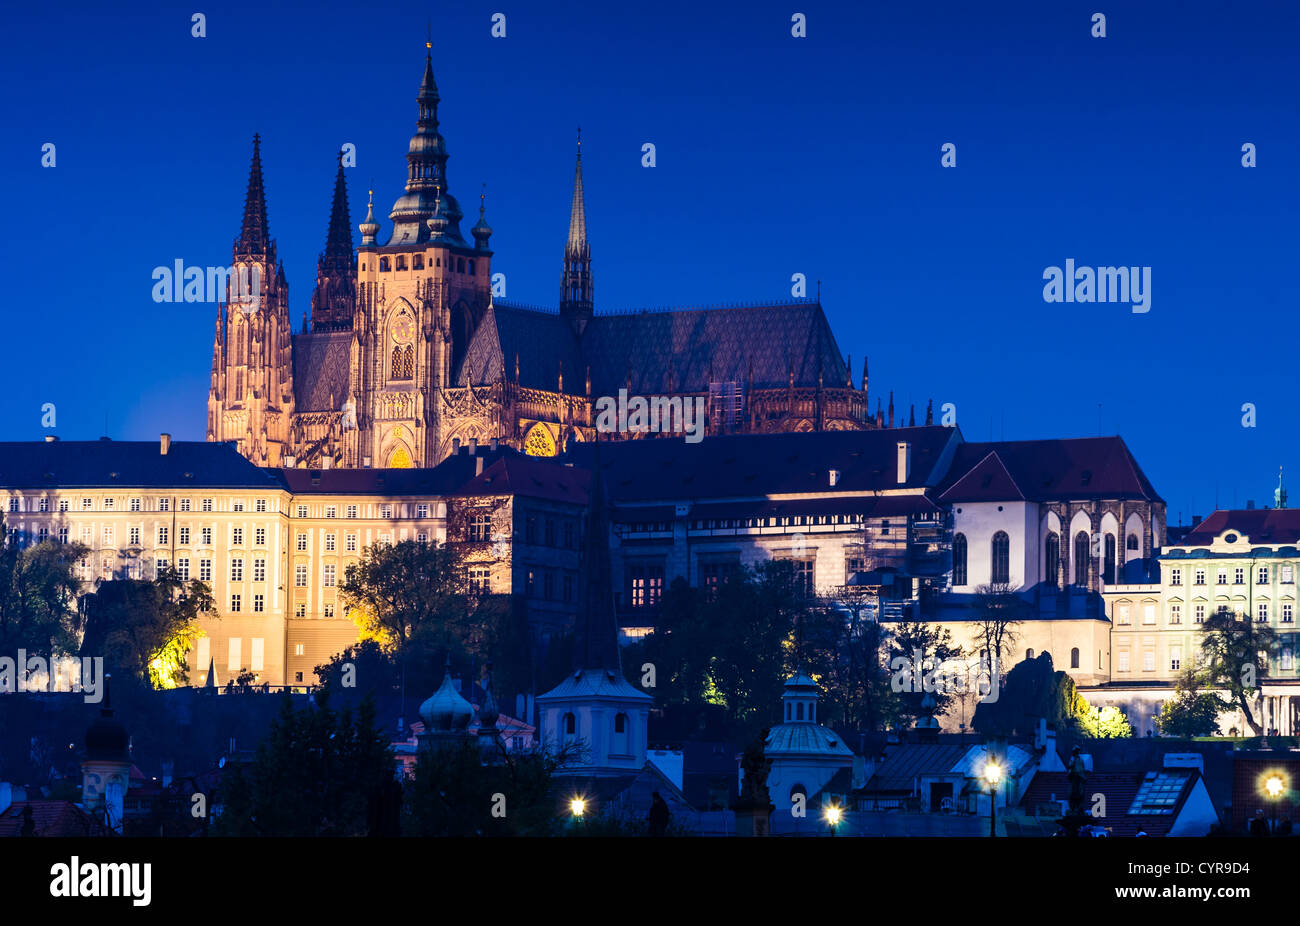 La cattedrale di Praga (San Vito), costruita in stile gotico, è il vero centro spirituale di tutta la nazione ceca. Foto Stock